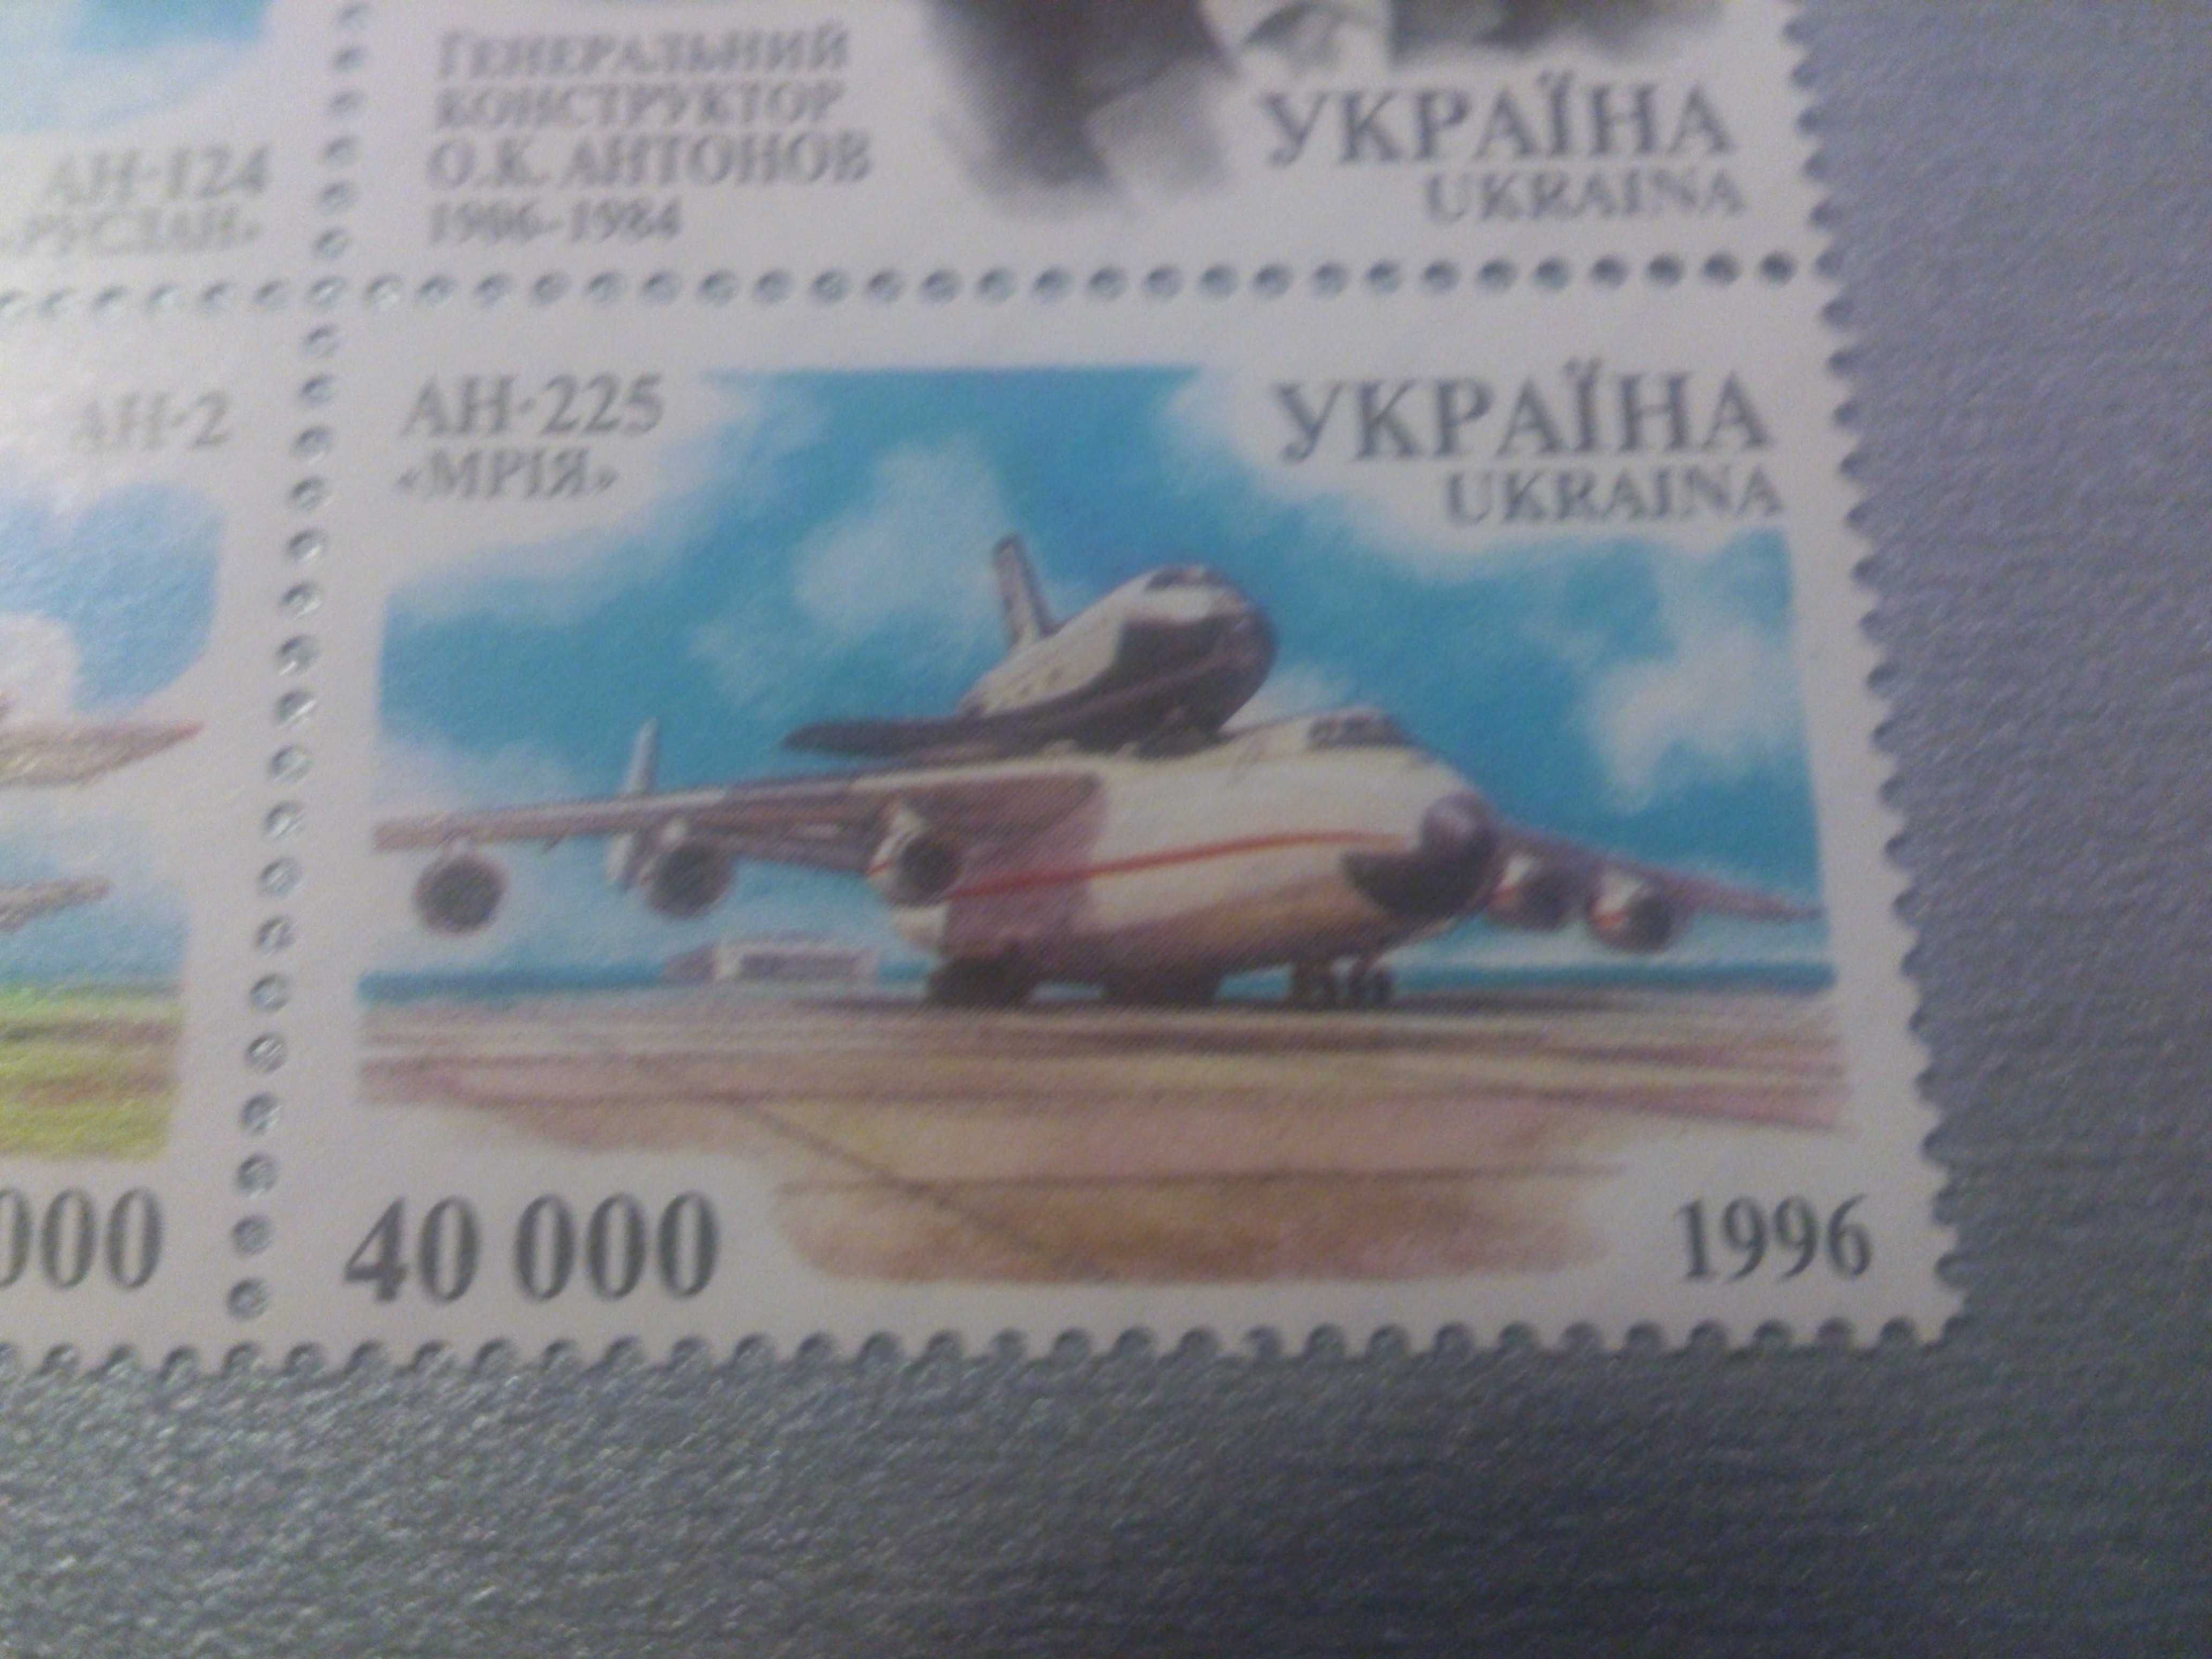 МРІЯ АН-225 Марка України 1996 року у блоці, ідеальний стан